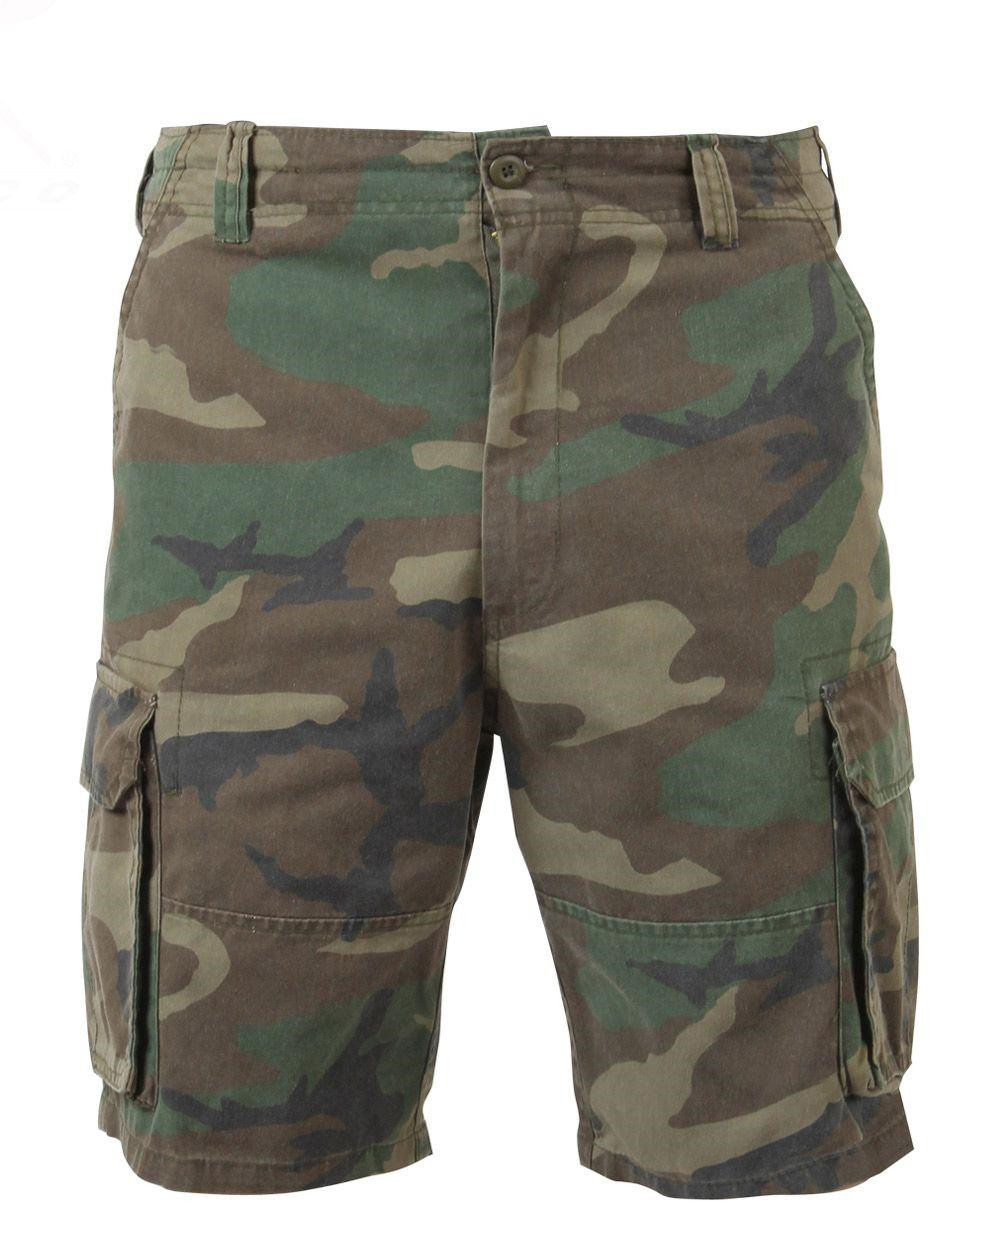 Rothco Cargo shorts (Woodland, S)